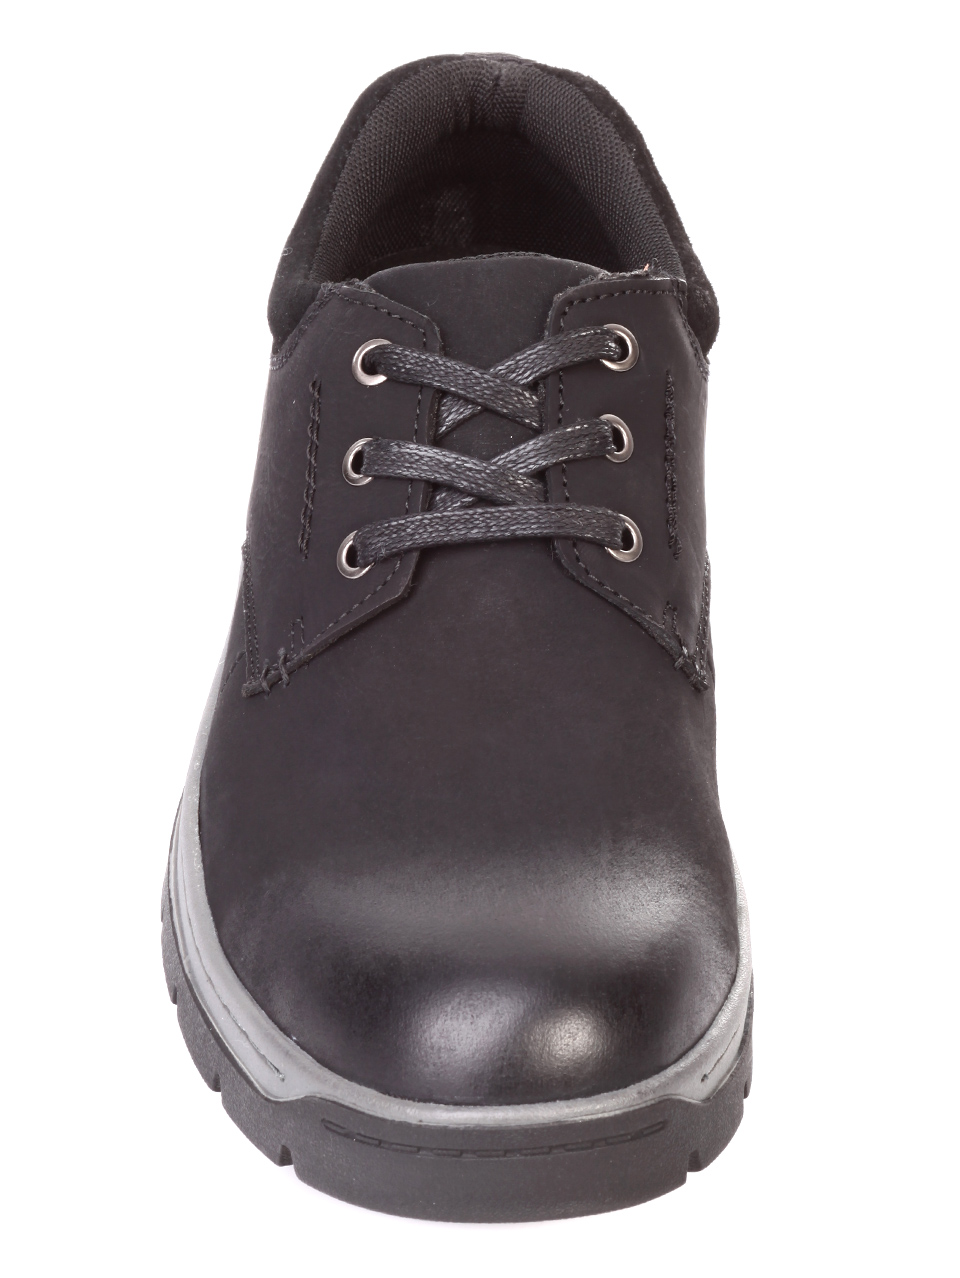 Ежедневни мъжки обувки от естествена кожа и естествен набук 7X-18847 black